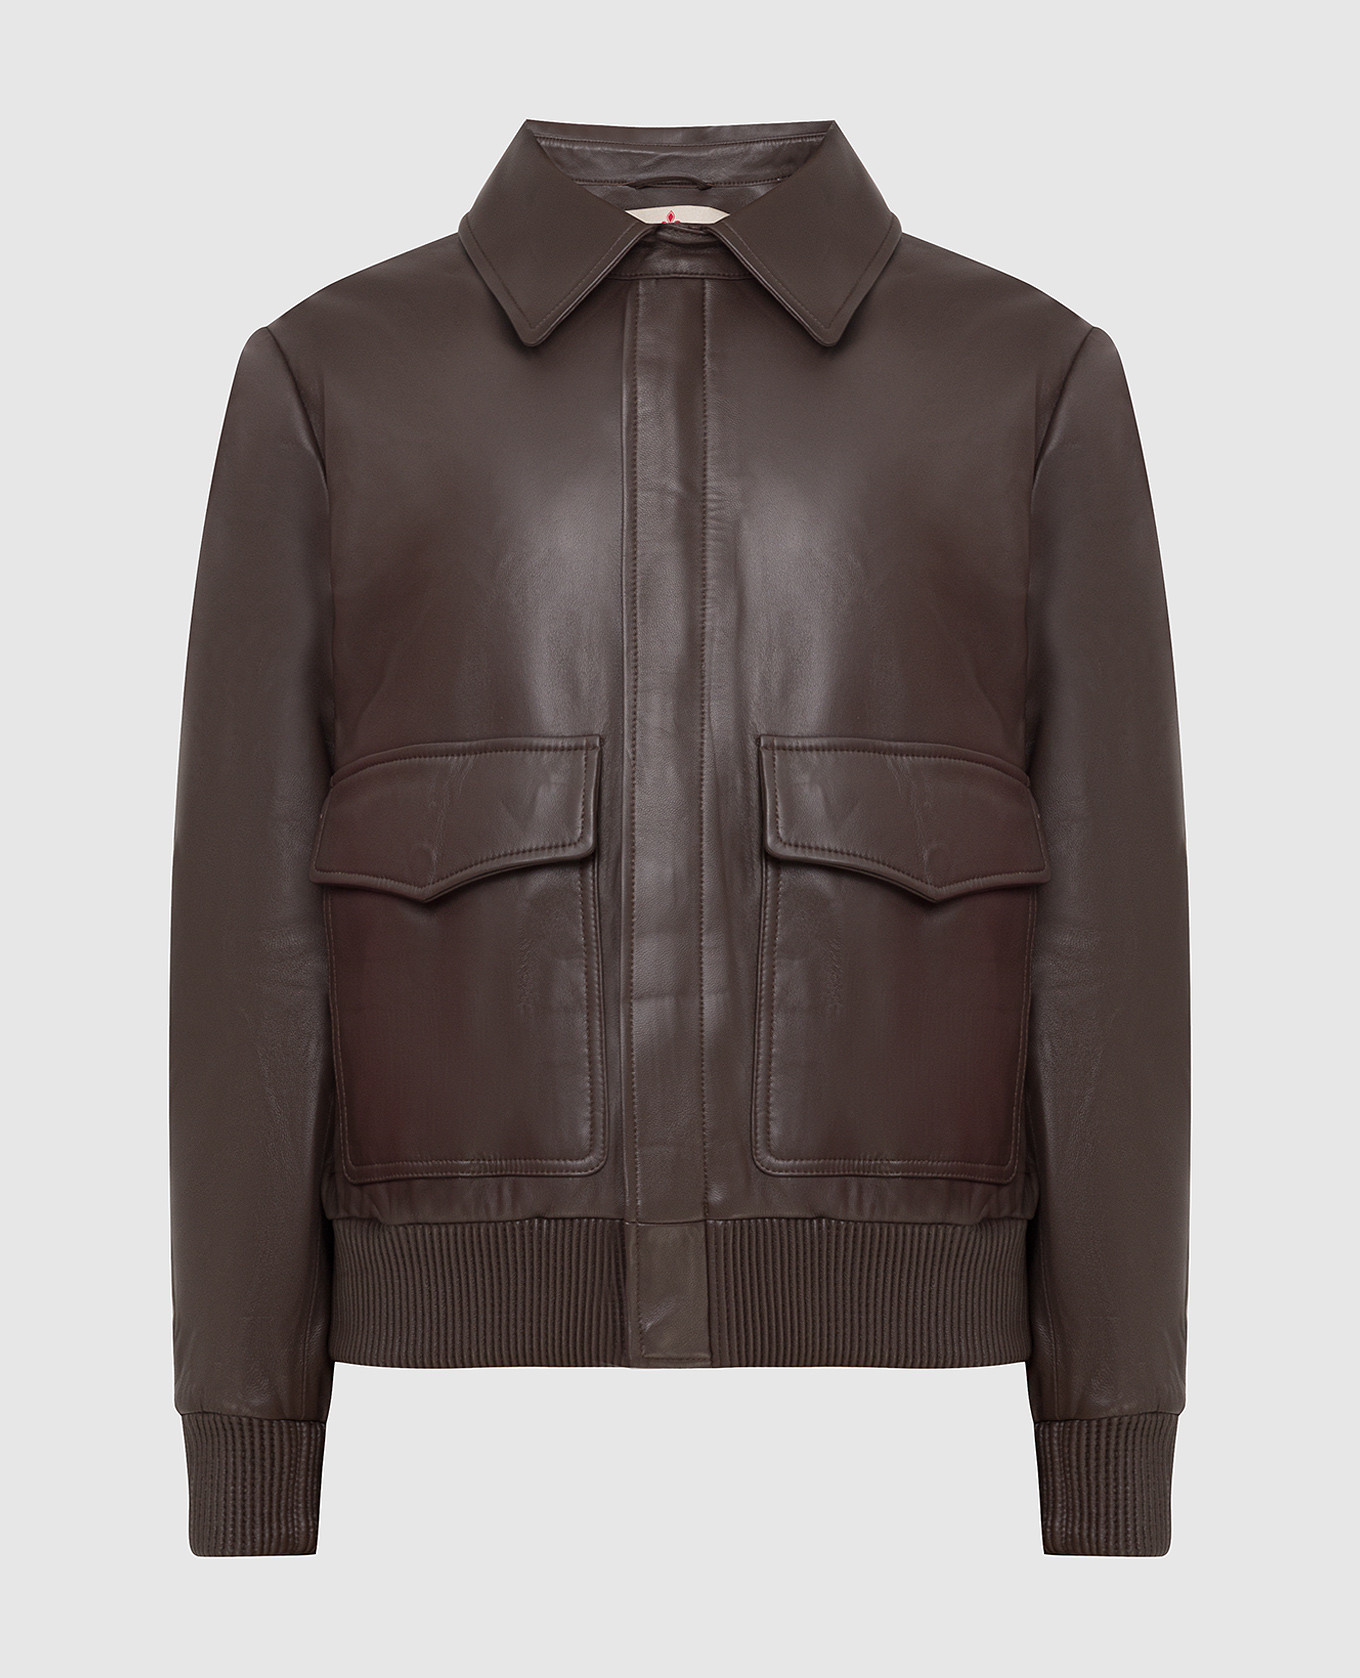 Dark Brown Leather Jacket ChangeClear